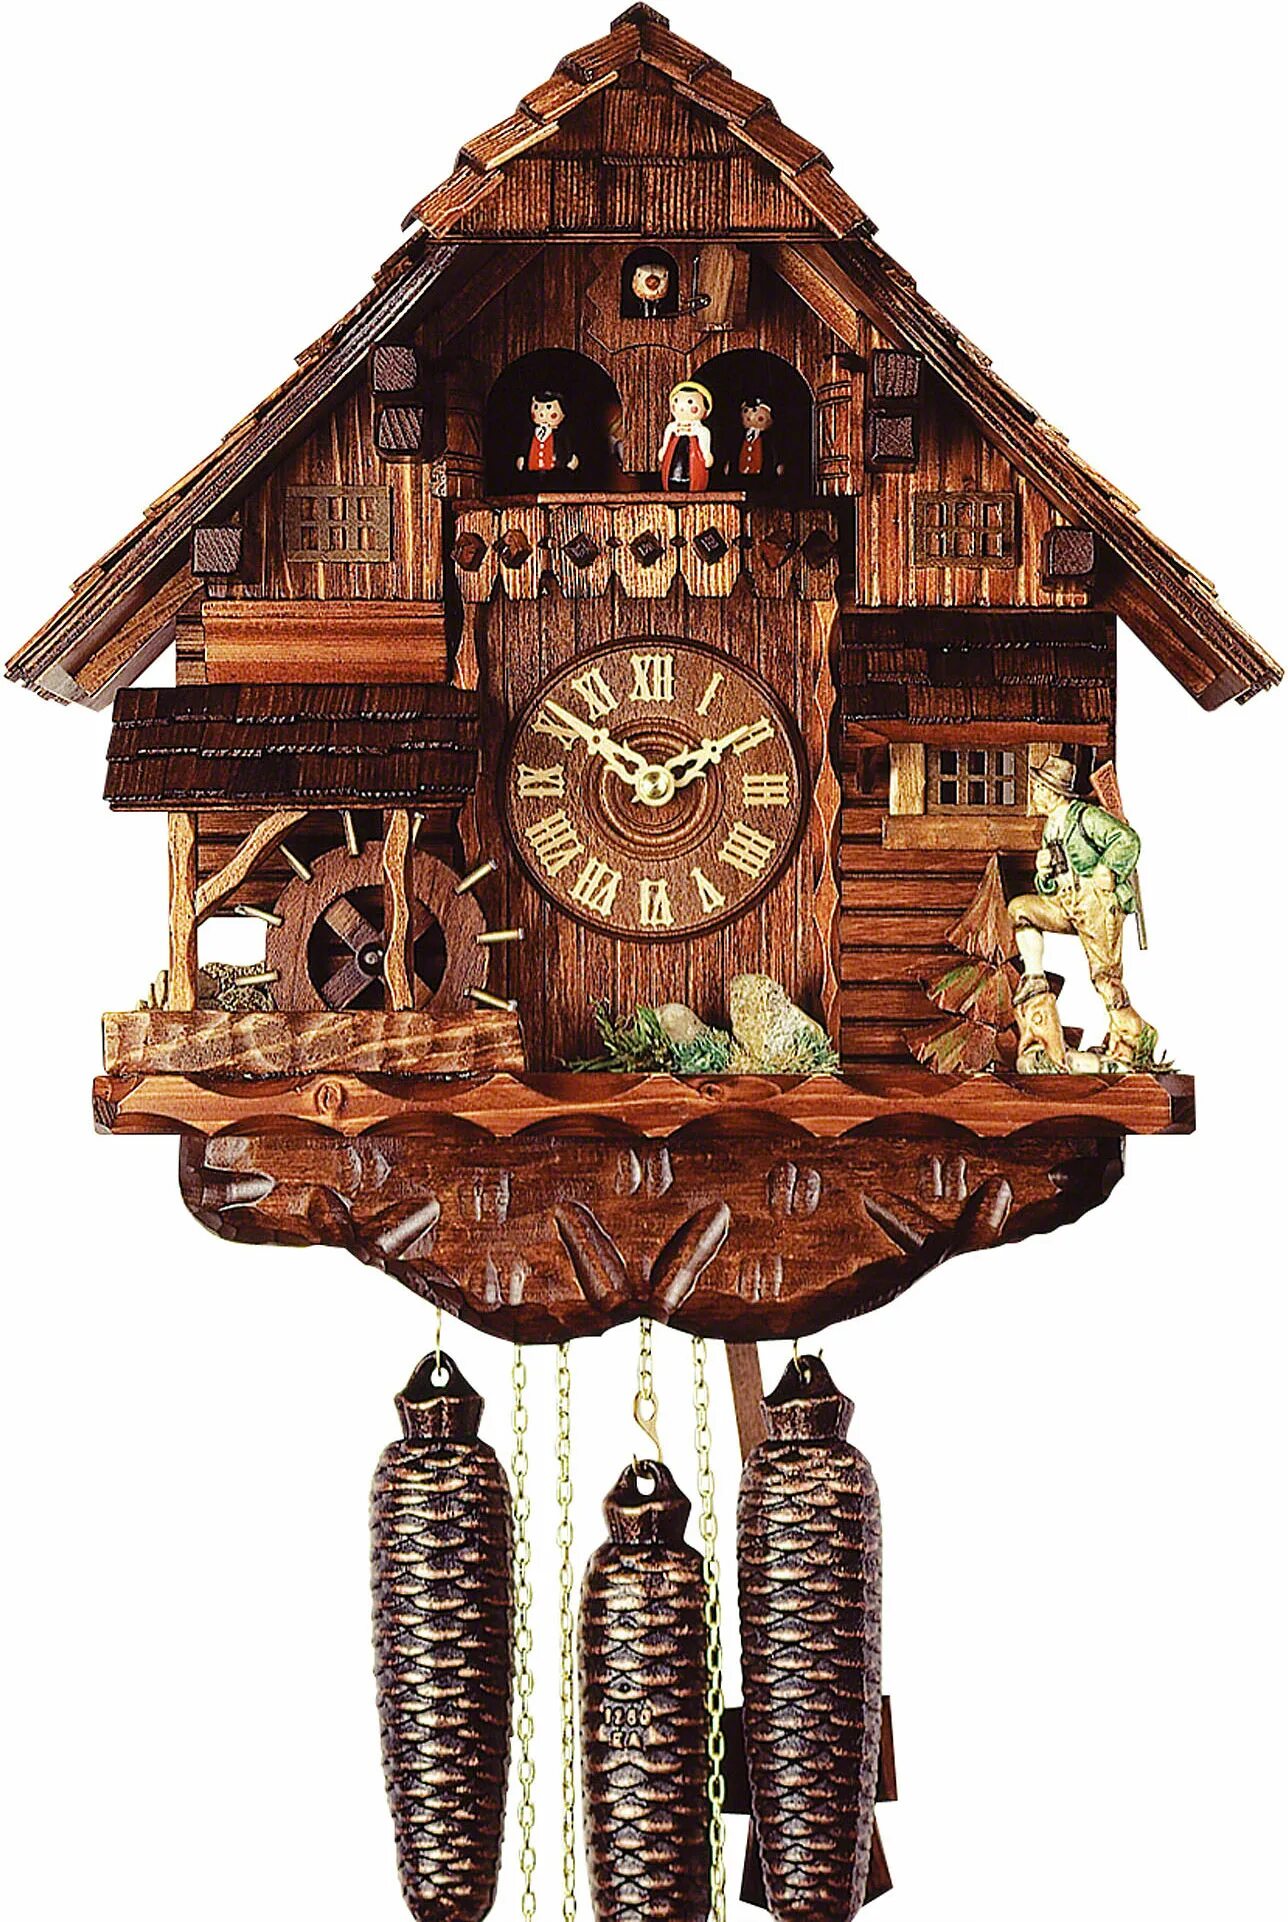 Часы с кукушкой Rombach & Haas. Rombach Haas настенные часы с кукушкой. Часы с кукушкой Шварцвальд. Часы с кукушкой Cuckoo.